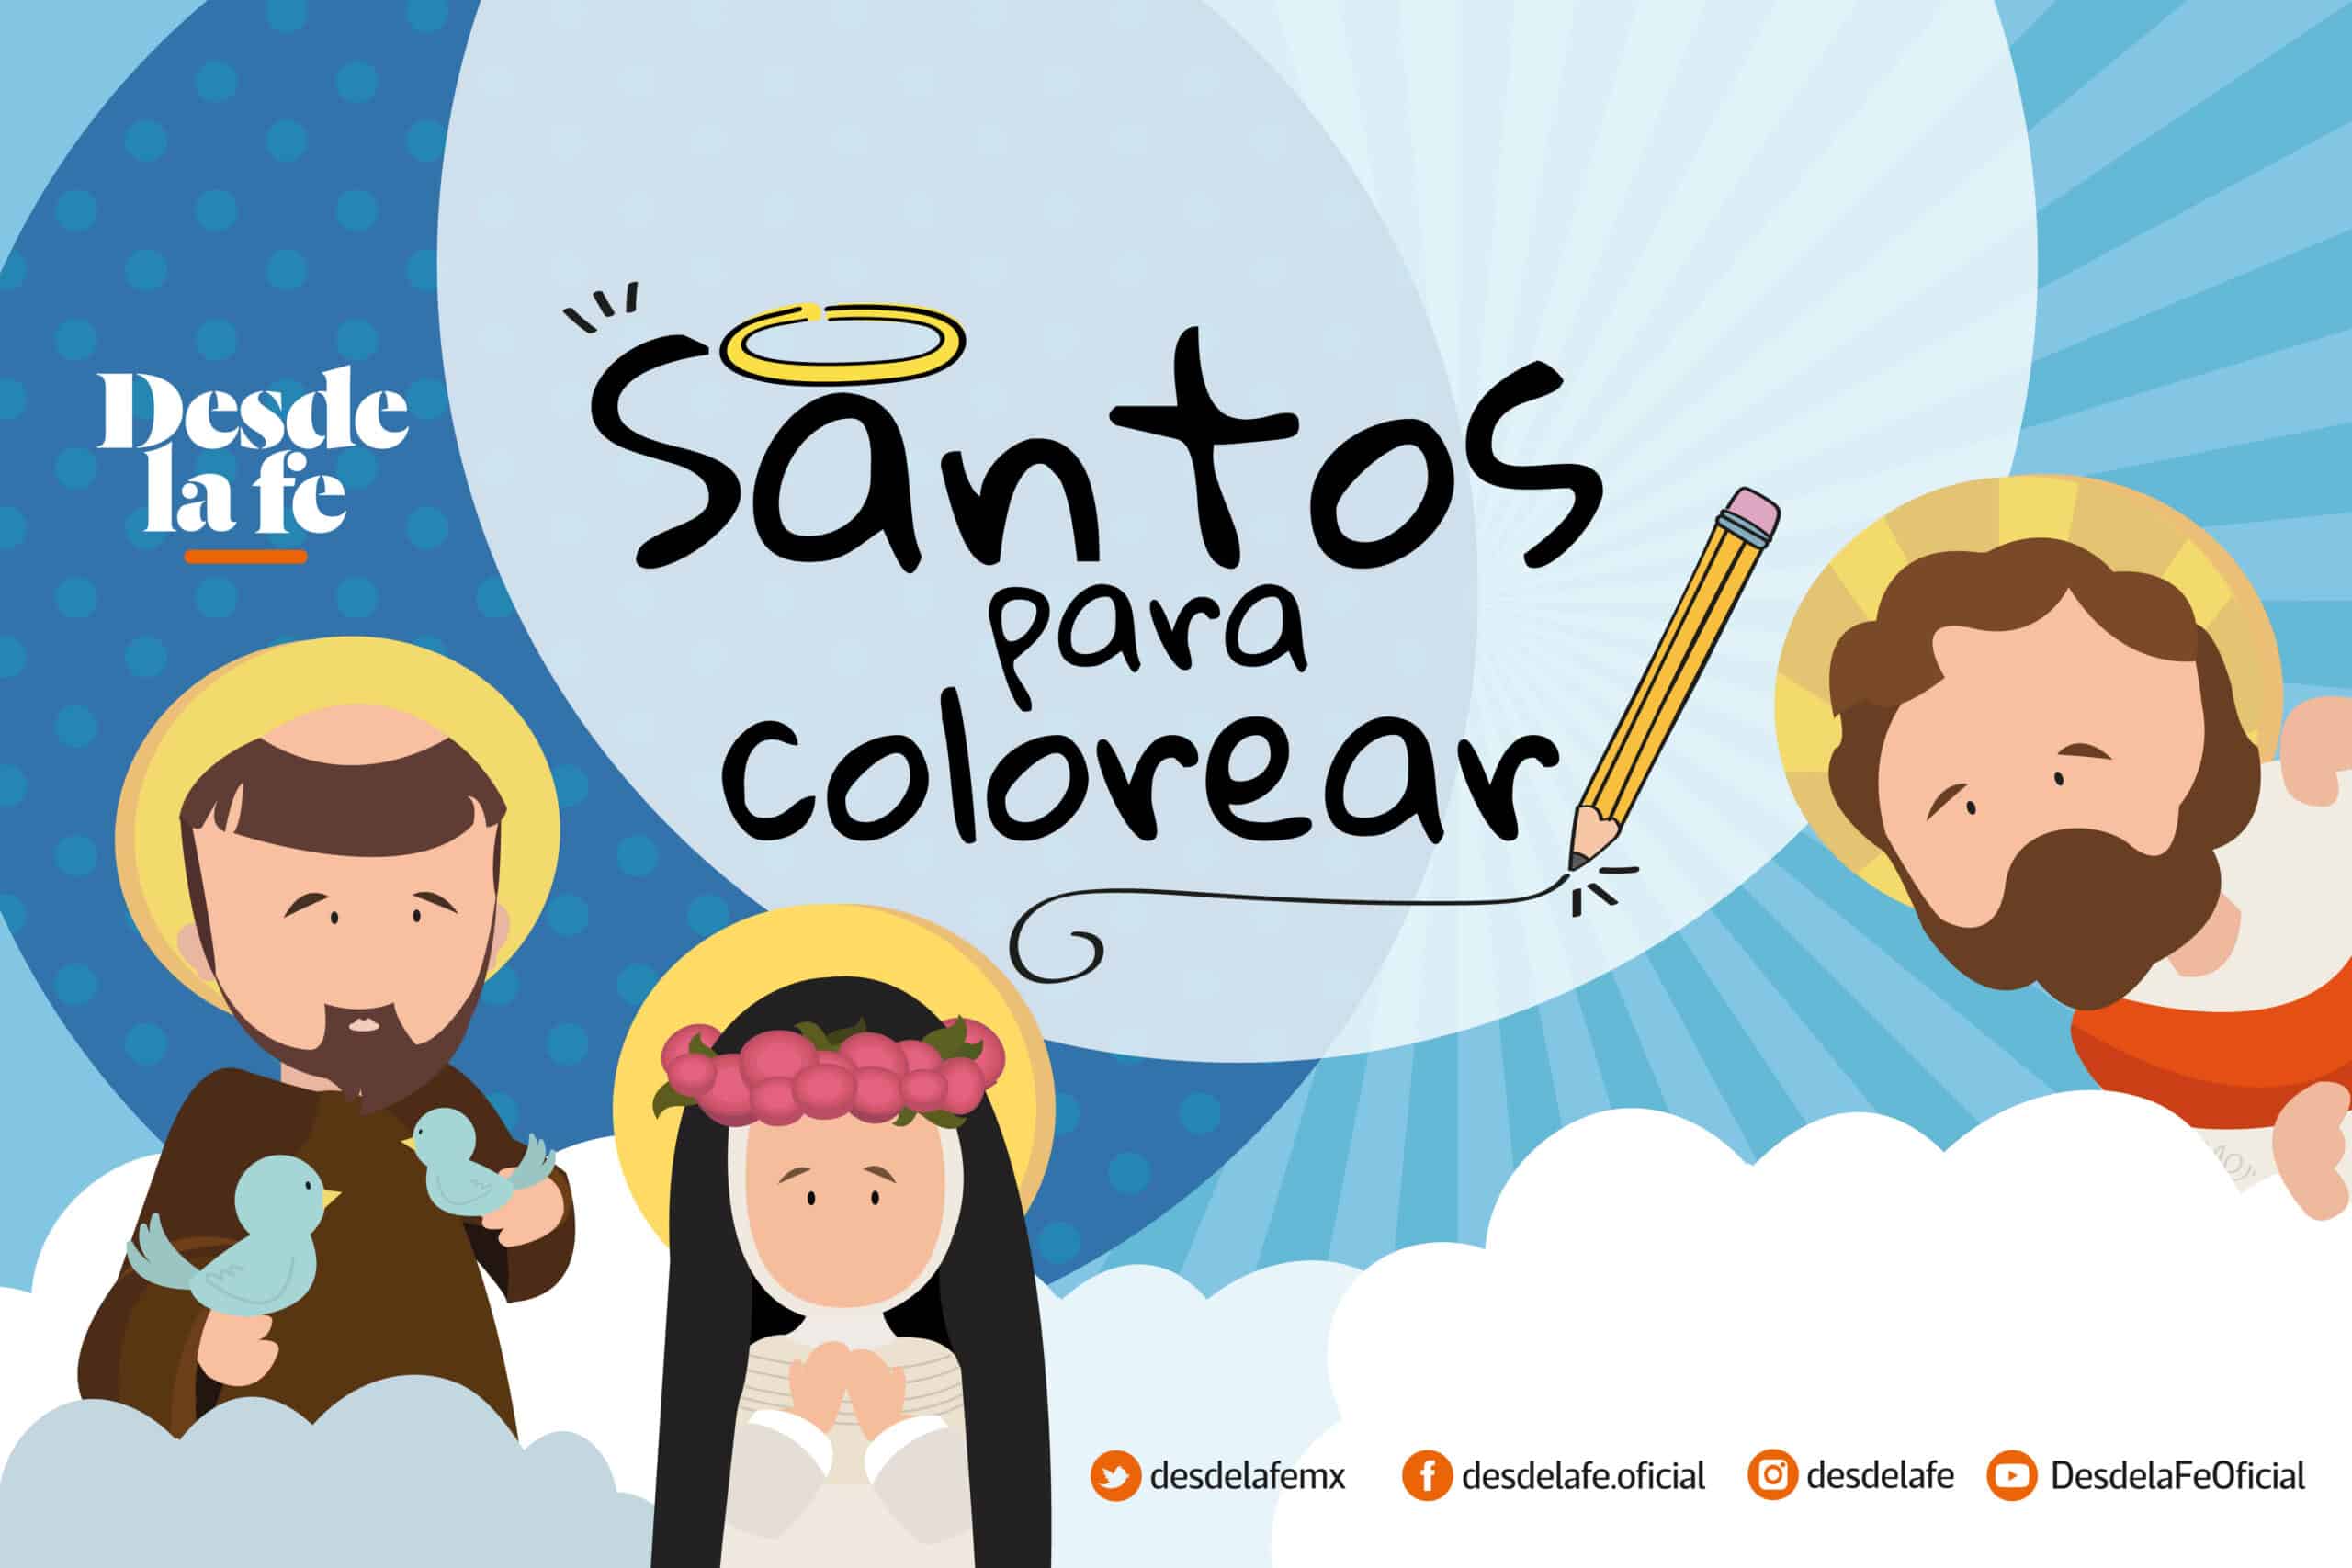 Álbum y dibujos de santos para niños, para colorear. Diseño: María Escutia